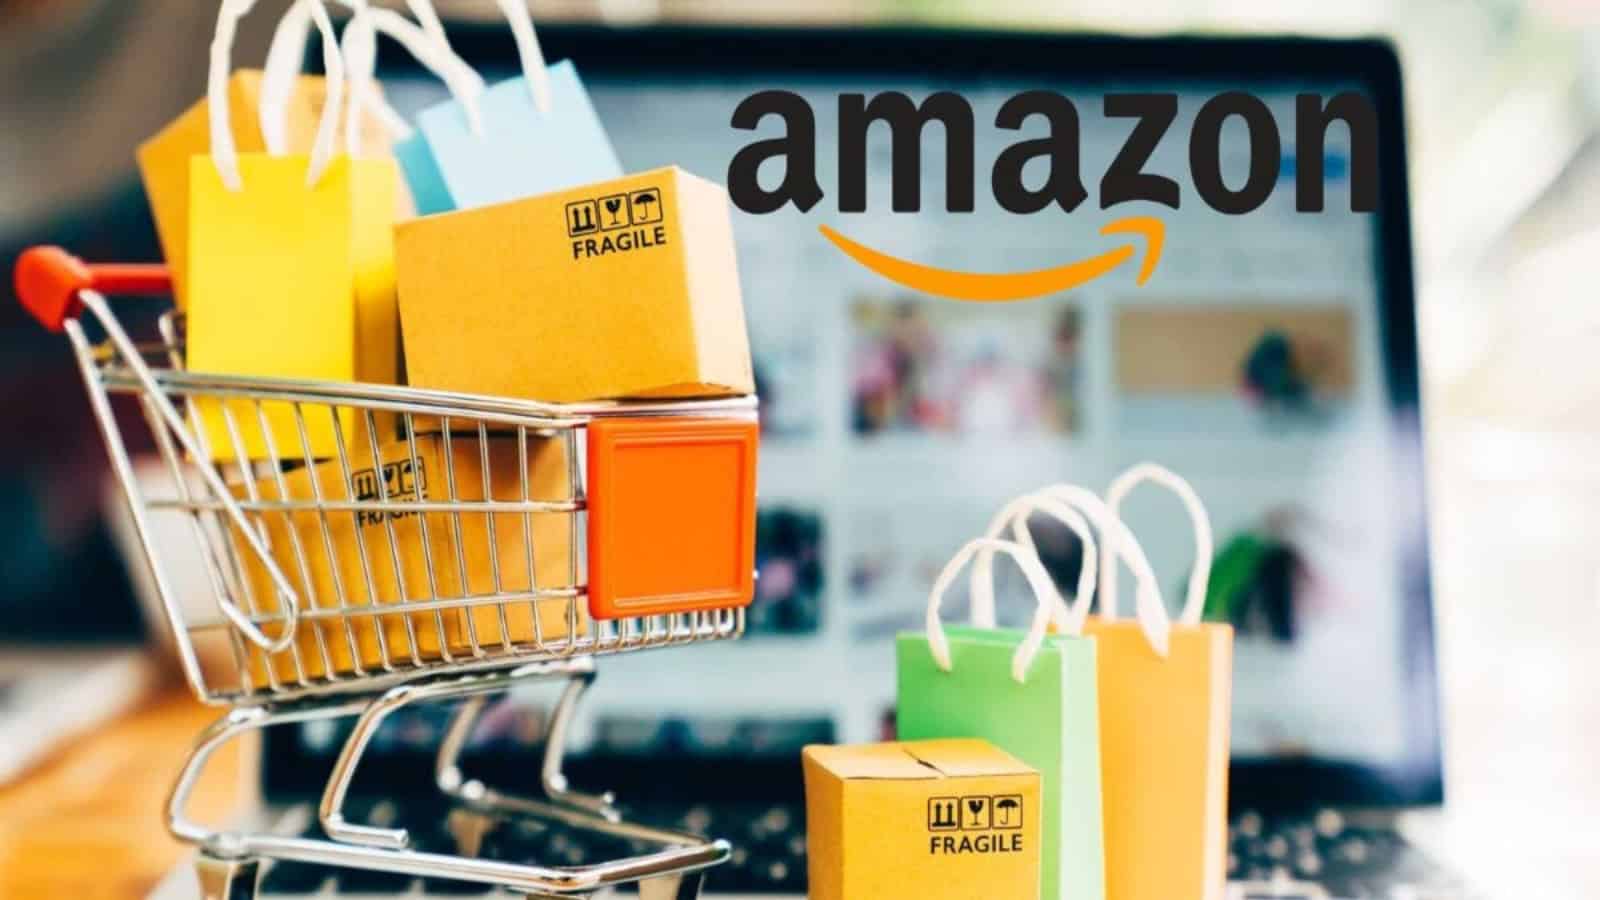 Amazon, offerta PRIMAVERILI al 50% di sconto: l'elenco